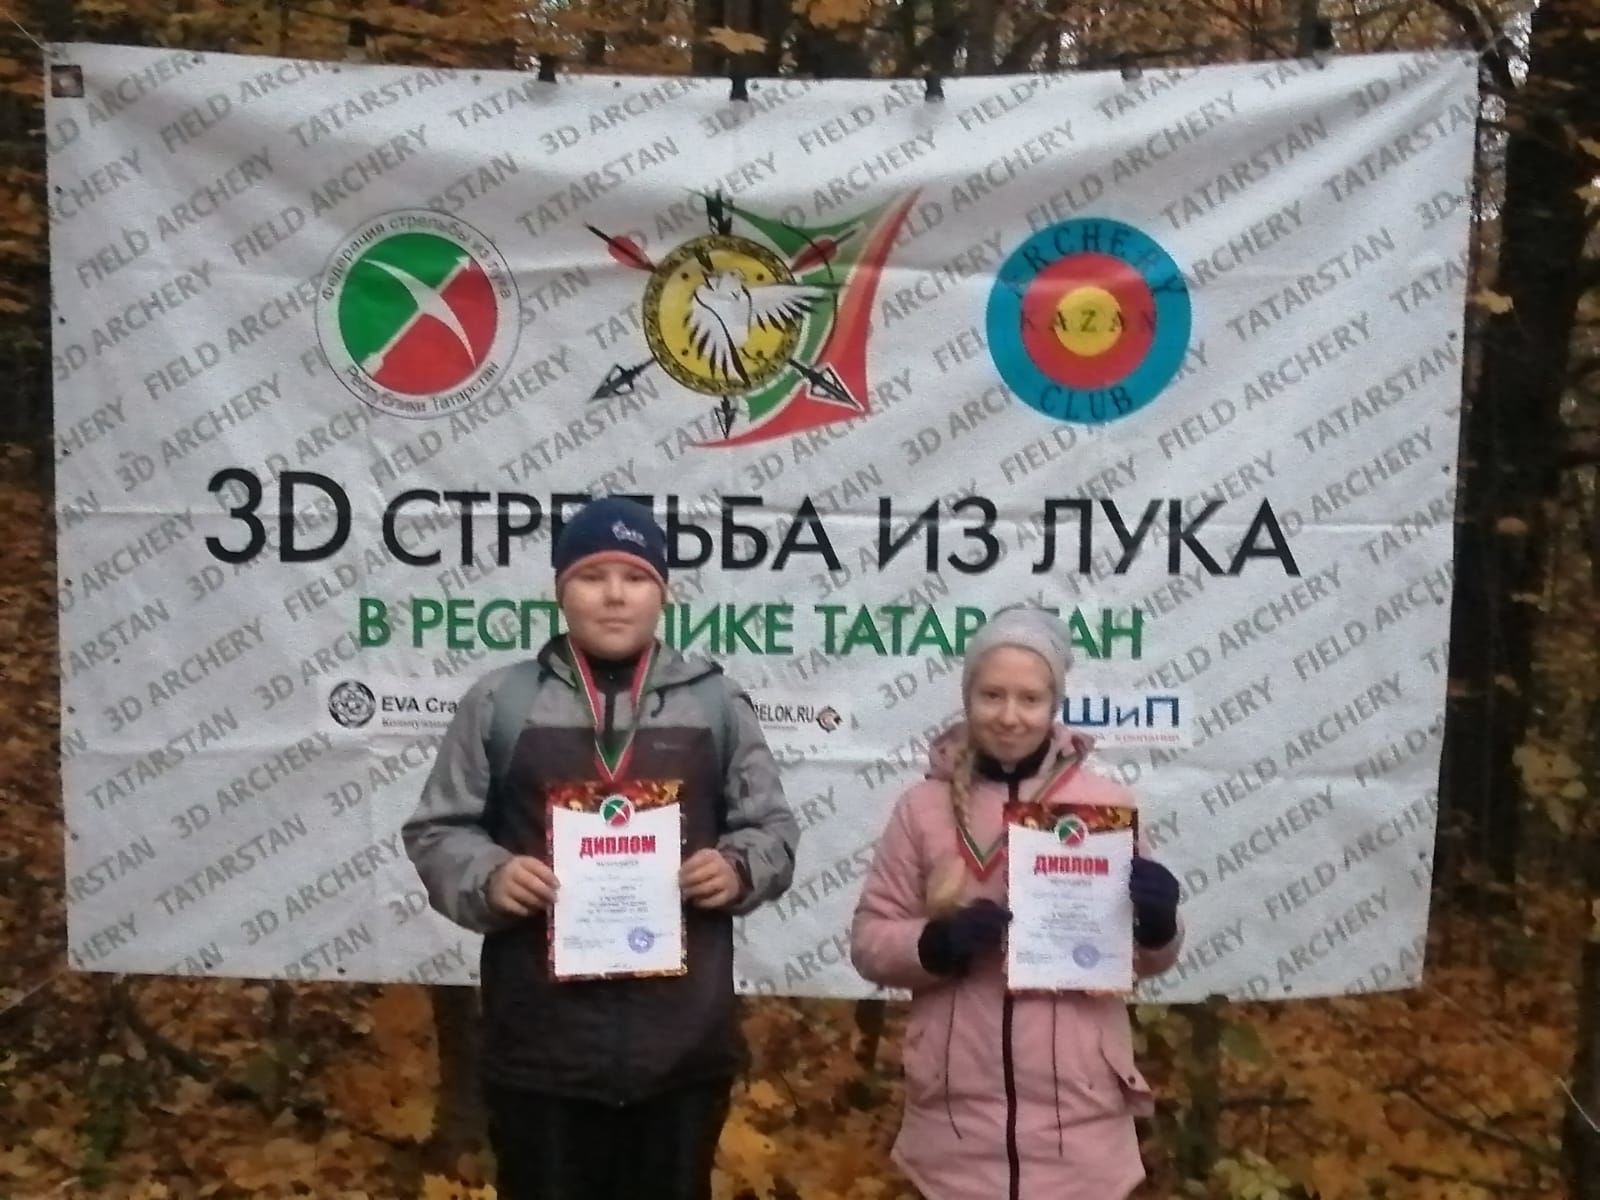 В Верхнеуслонском районе прошел Чемпионат Татарстана по 3D стрельбе